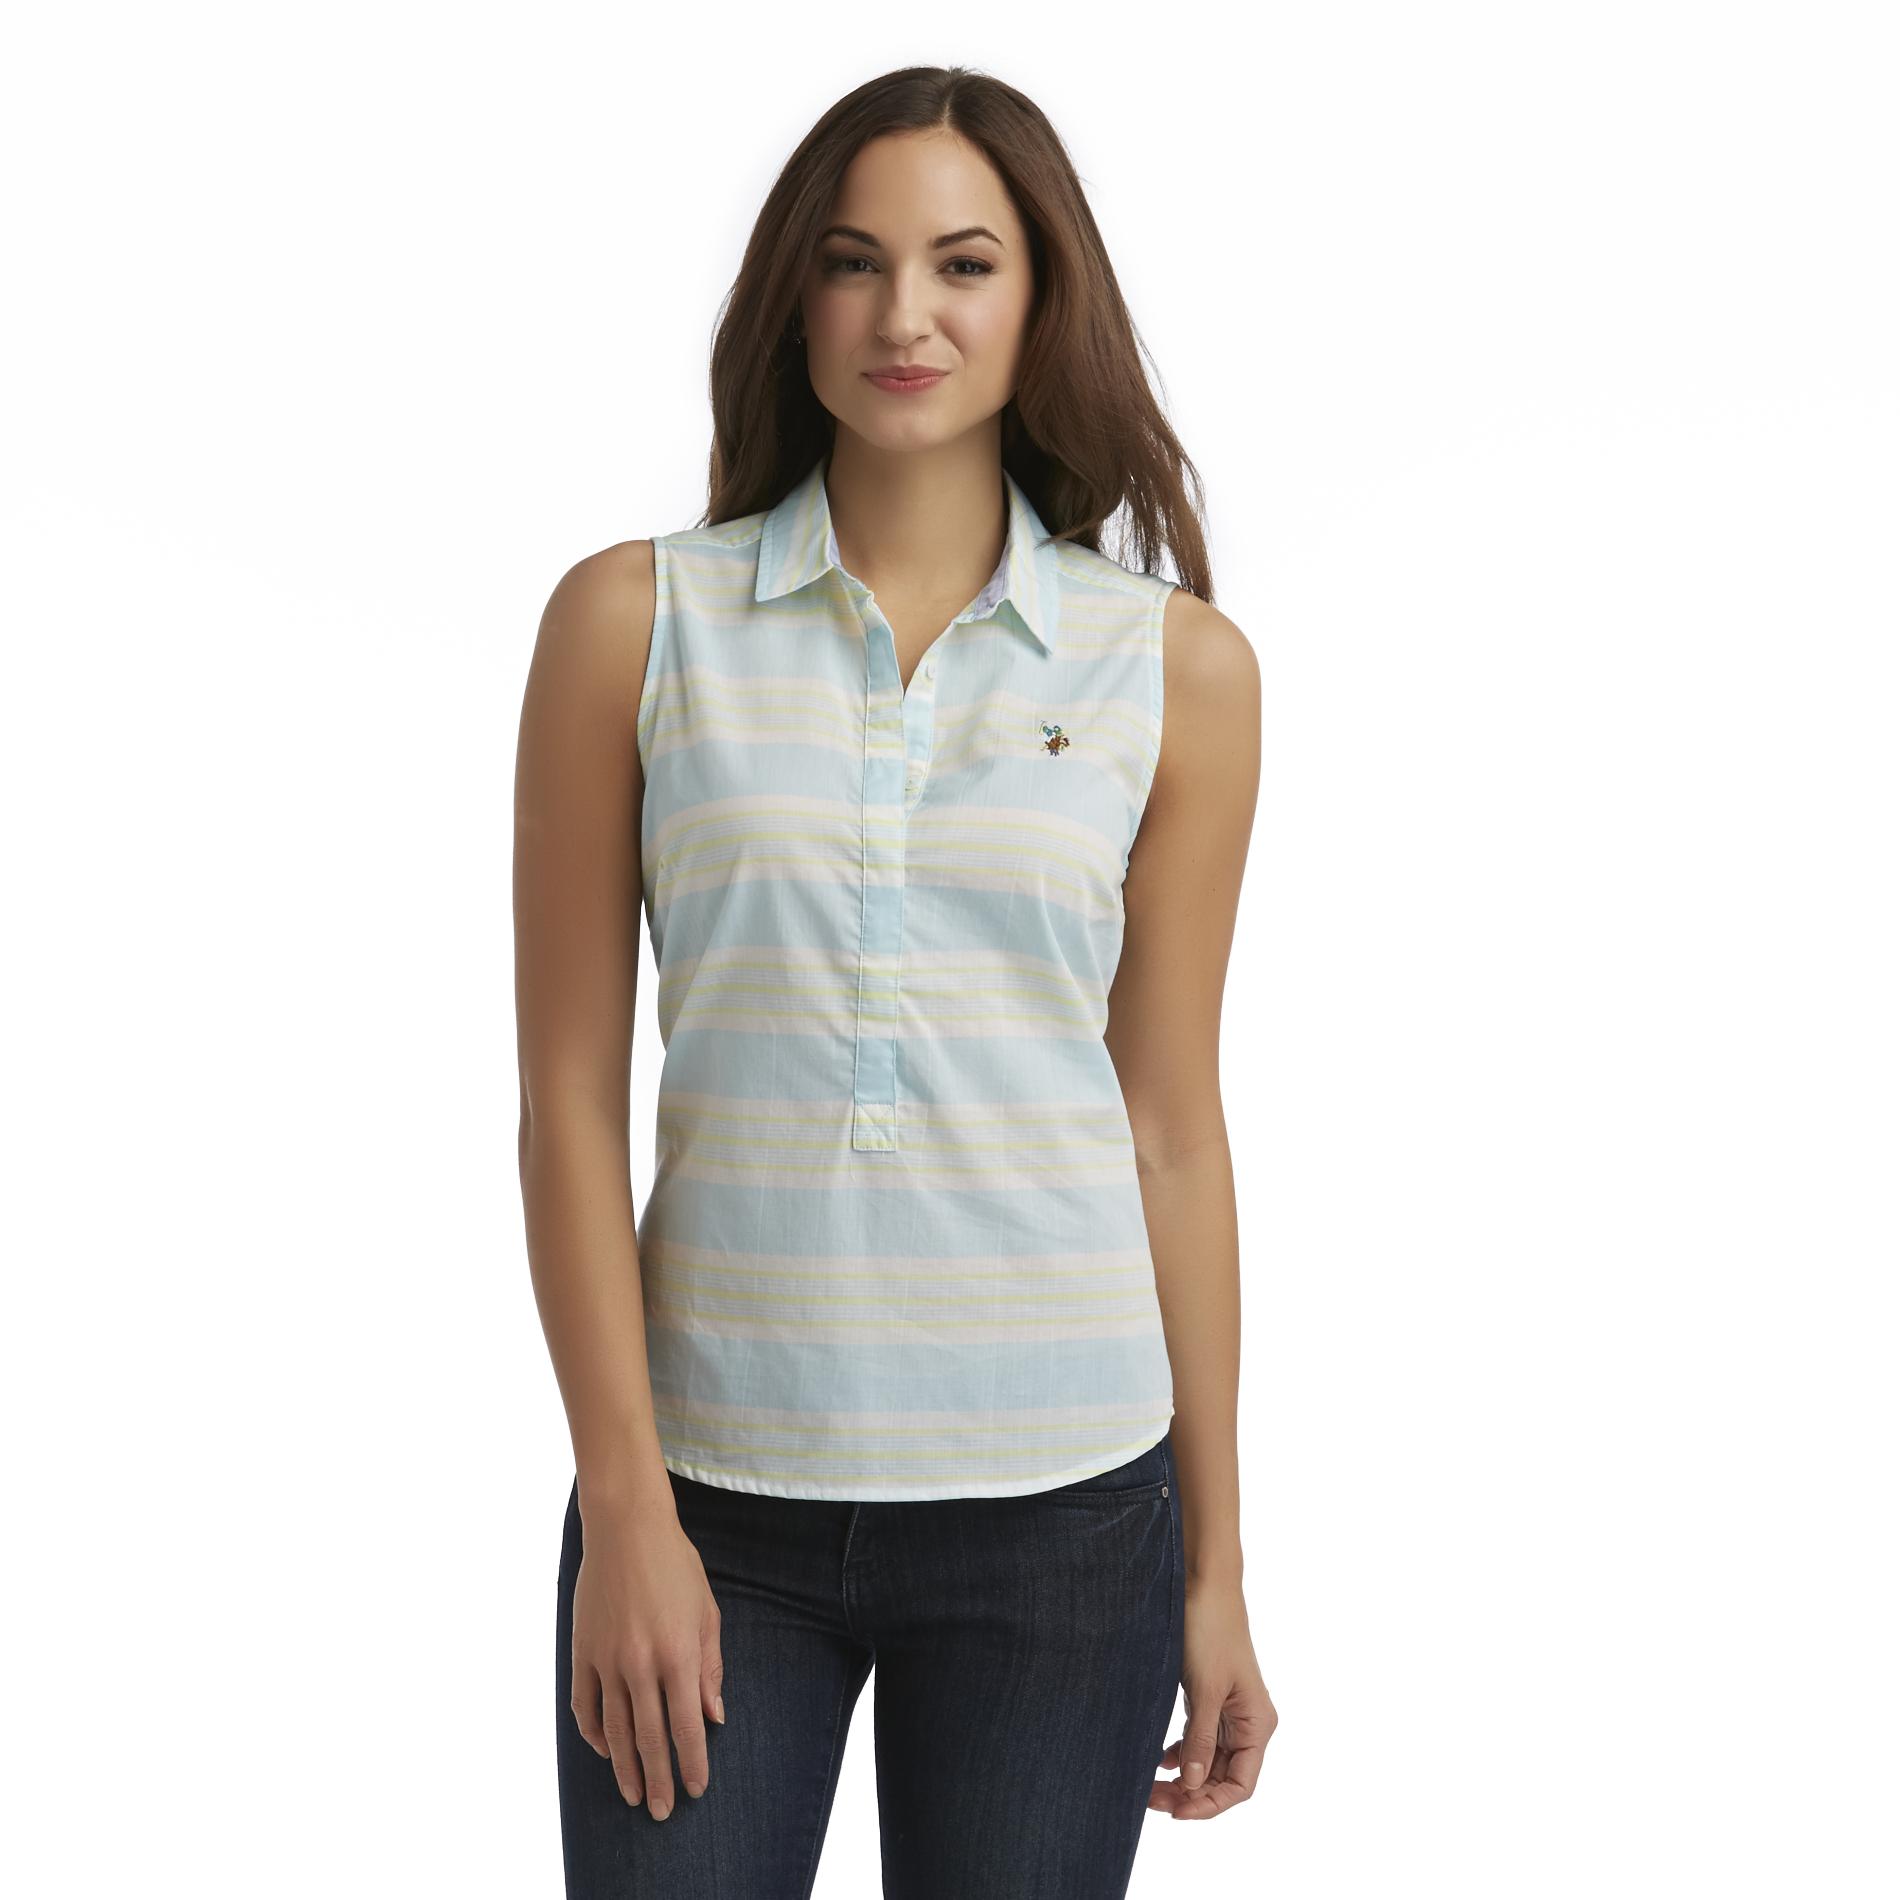 U.S. Polo Assn. Women's Sleeveless Shirt - Striped